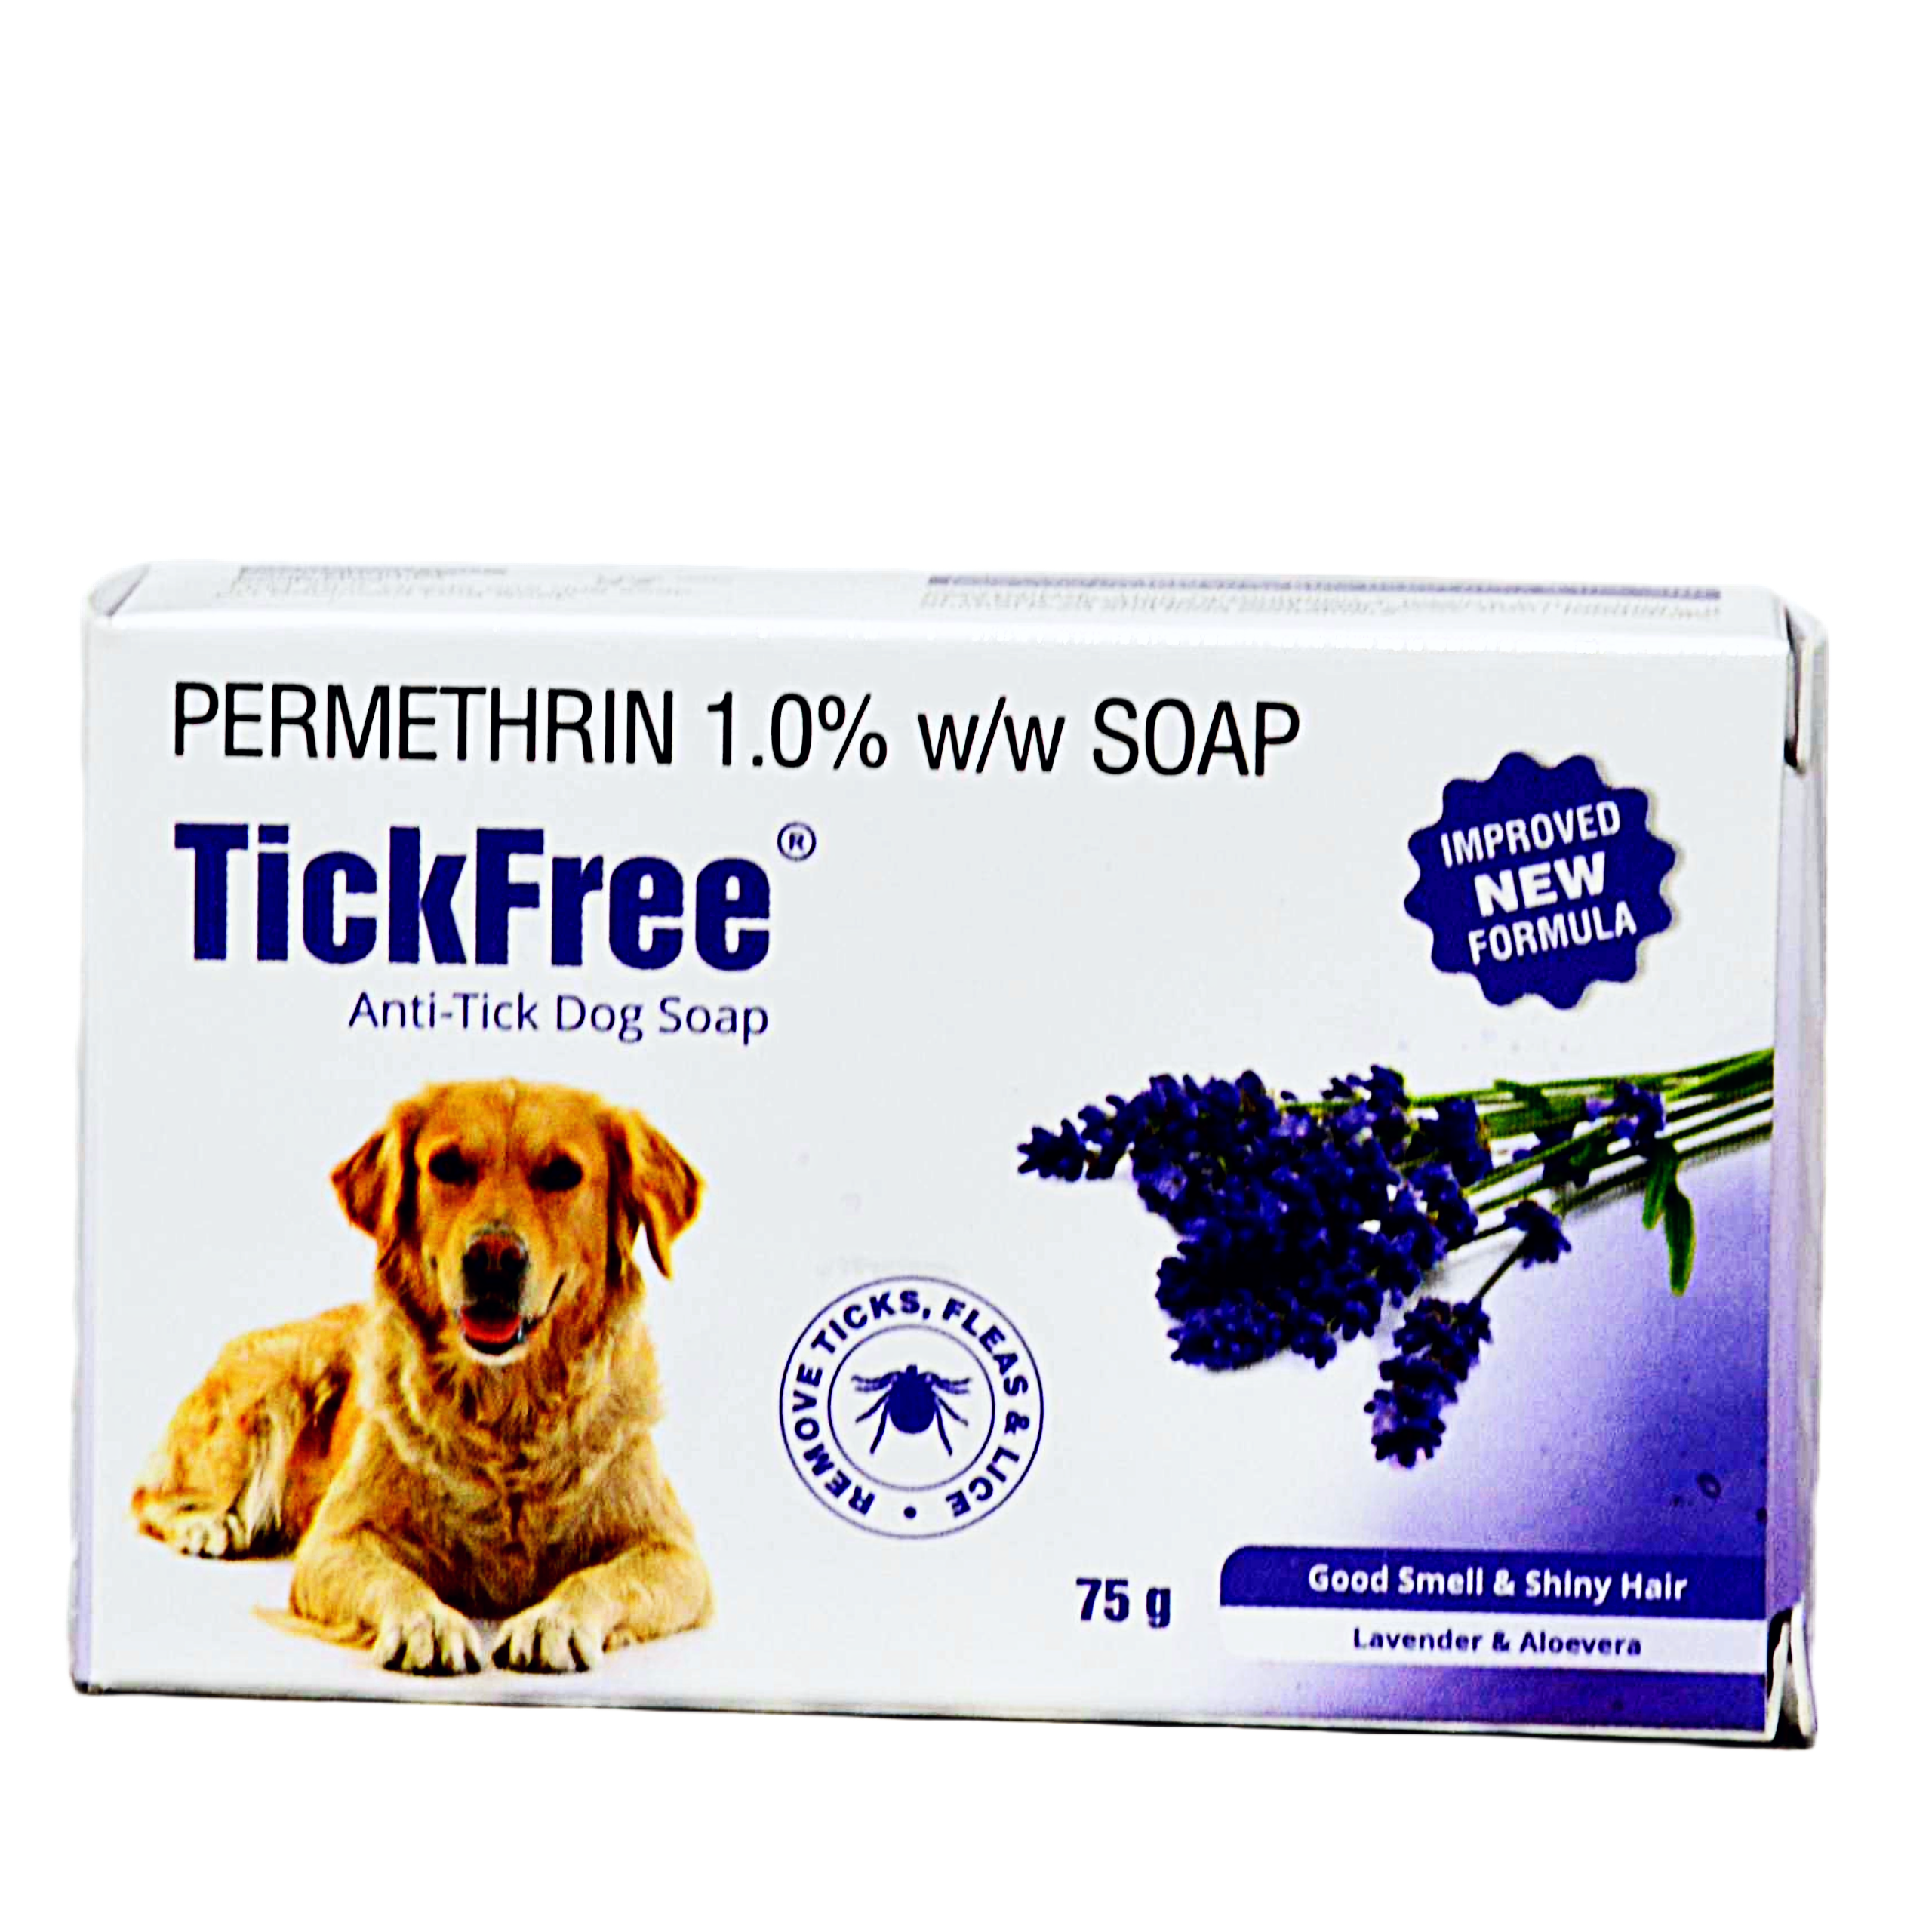 Sky EC TickFree Anti Tick Dog Soap PERMETHRIN 1.0% W/W SOAP – 75 g